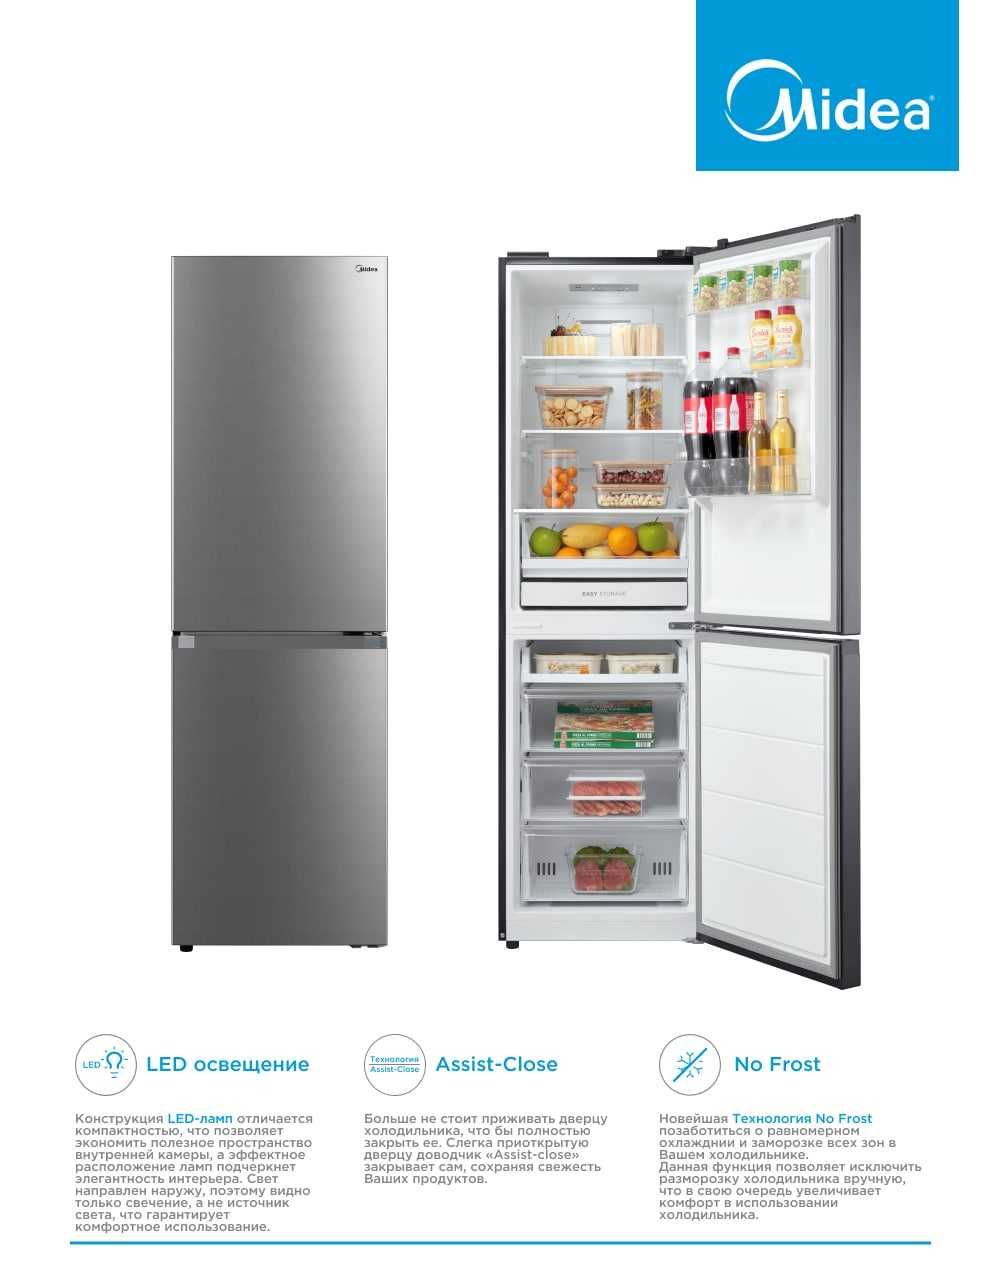 Холодильник Midea MDRB379FGF02 259л 180см No Frost, есть доставка!